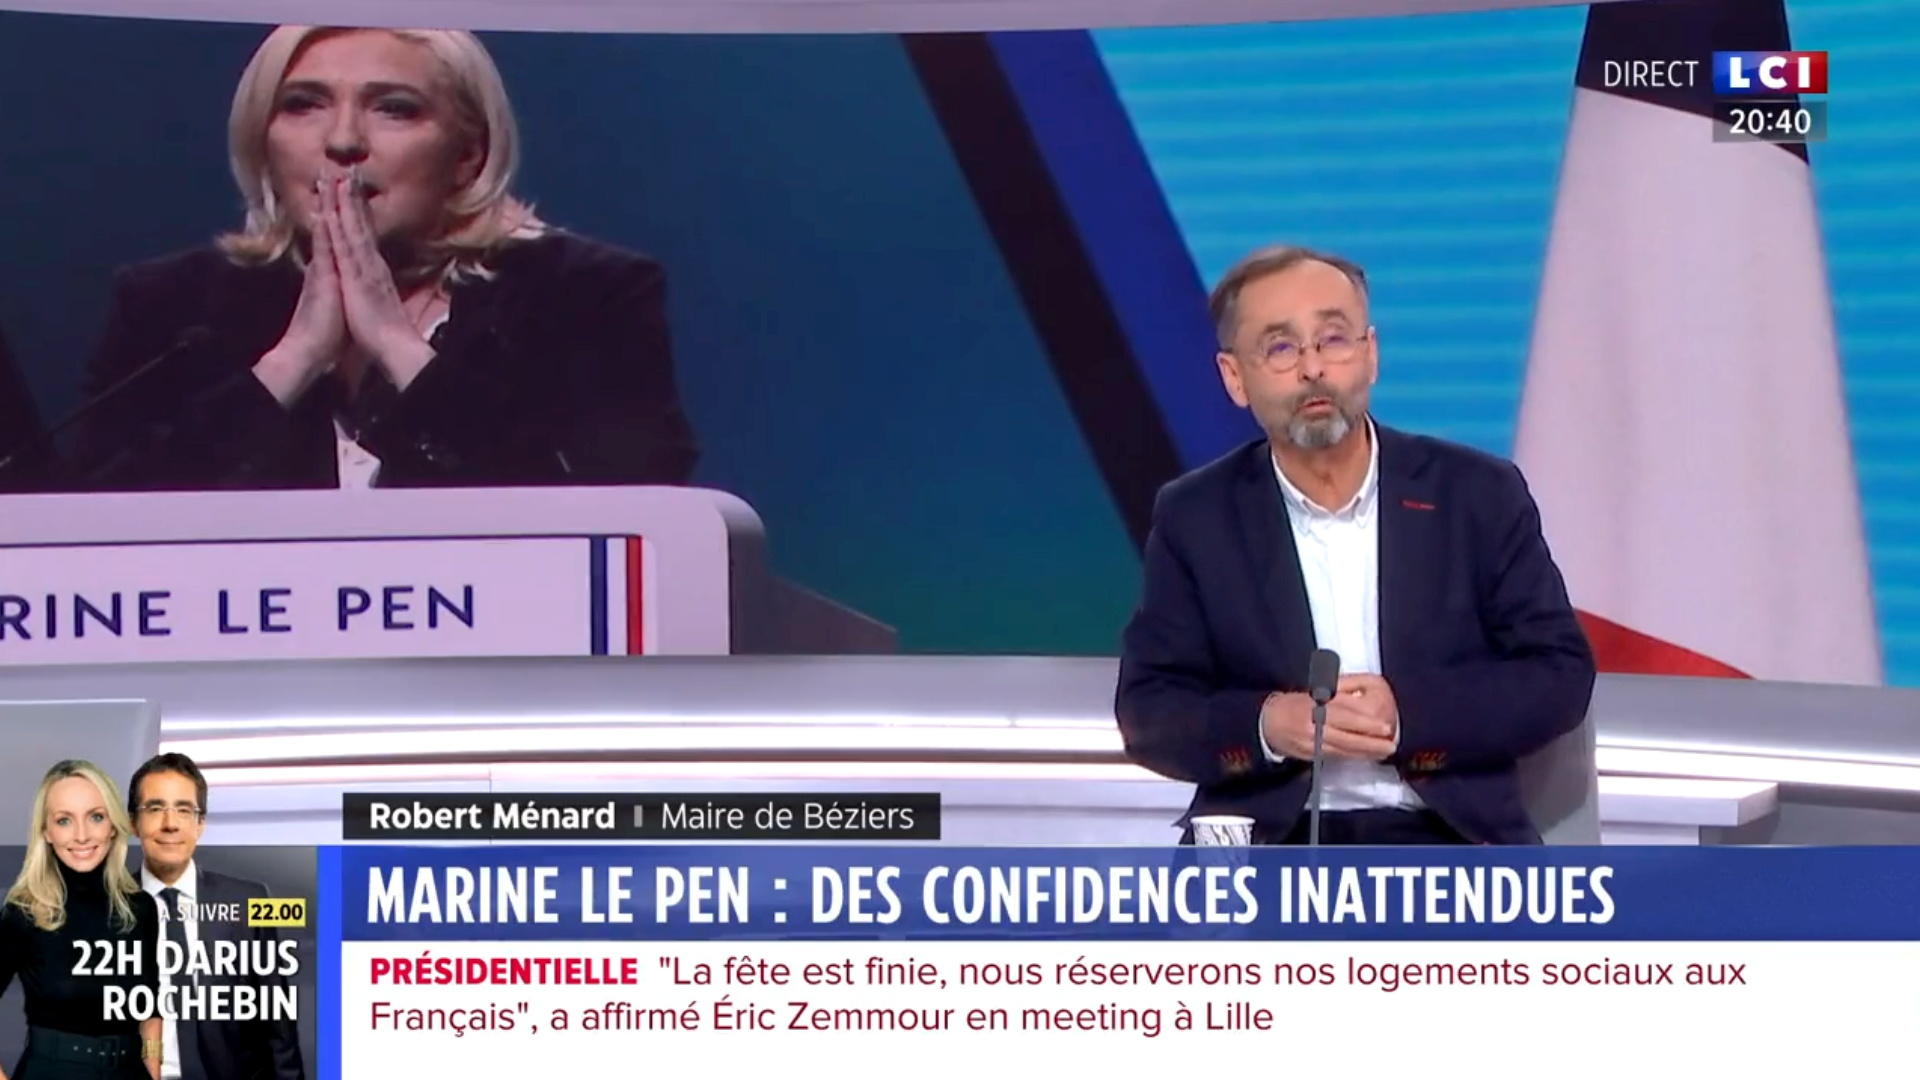 Robert Ménard dans le 20 heures de LCI, le 5 février. Le temps de parole, «c’est compliqué avec lui, il a donné son parrainage à Marine Le Pen mais peut être pro-Zemmour», pointe une documentaliste vidéo de la chaîne. LCI